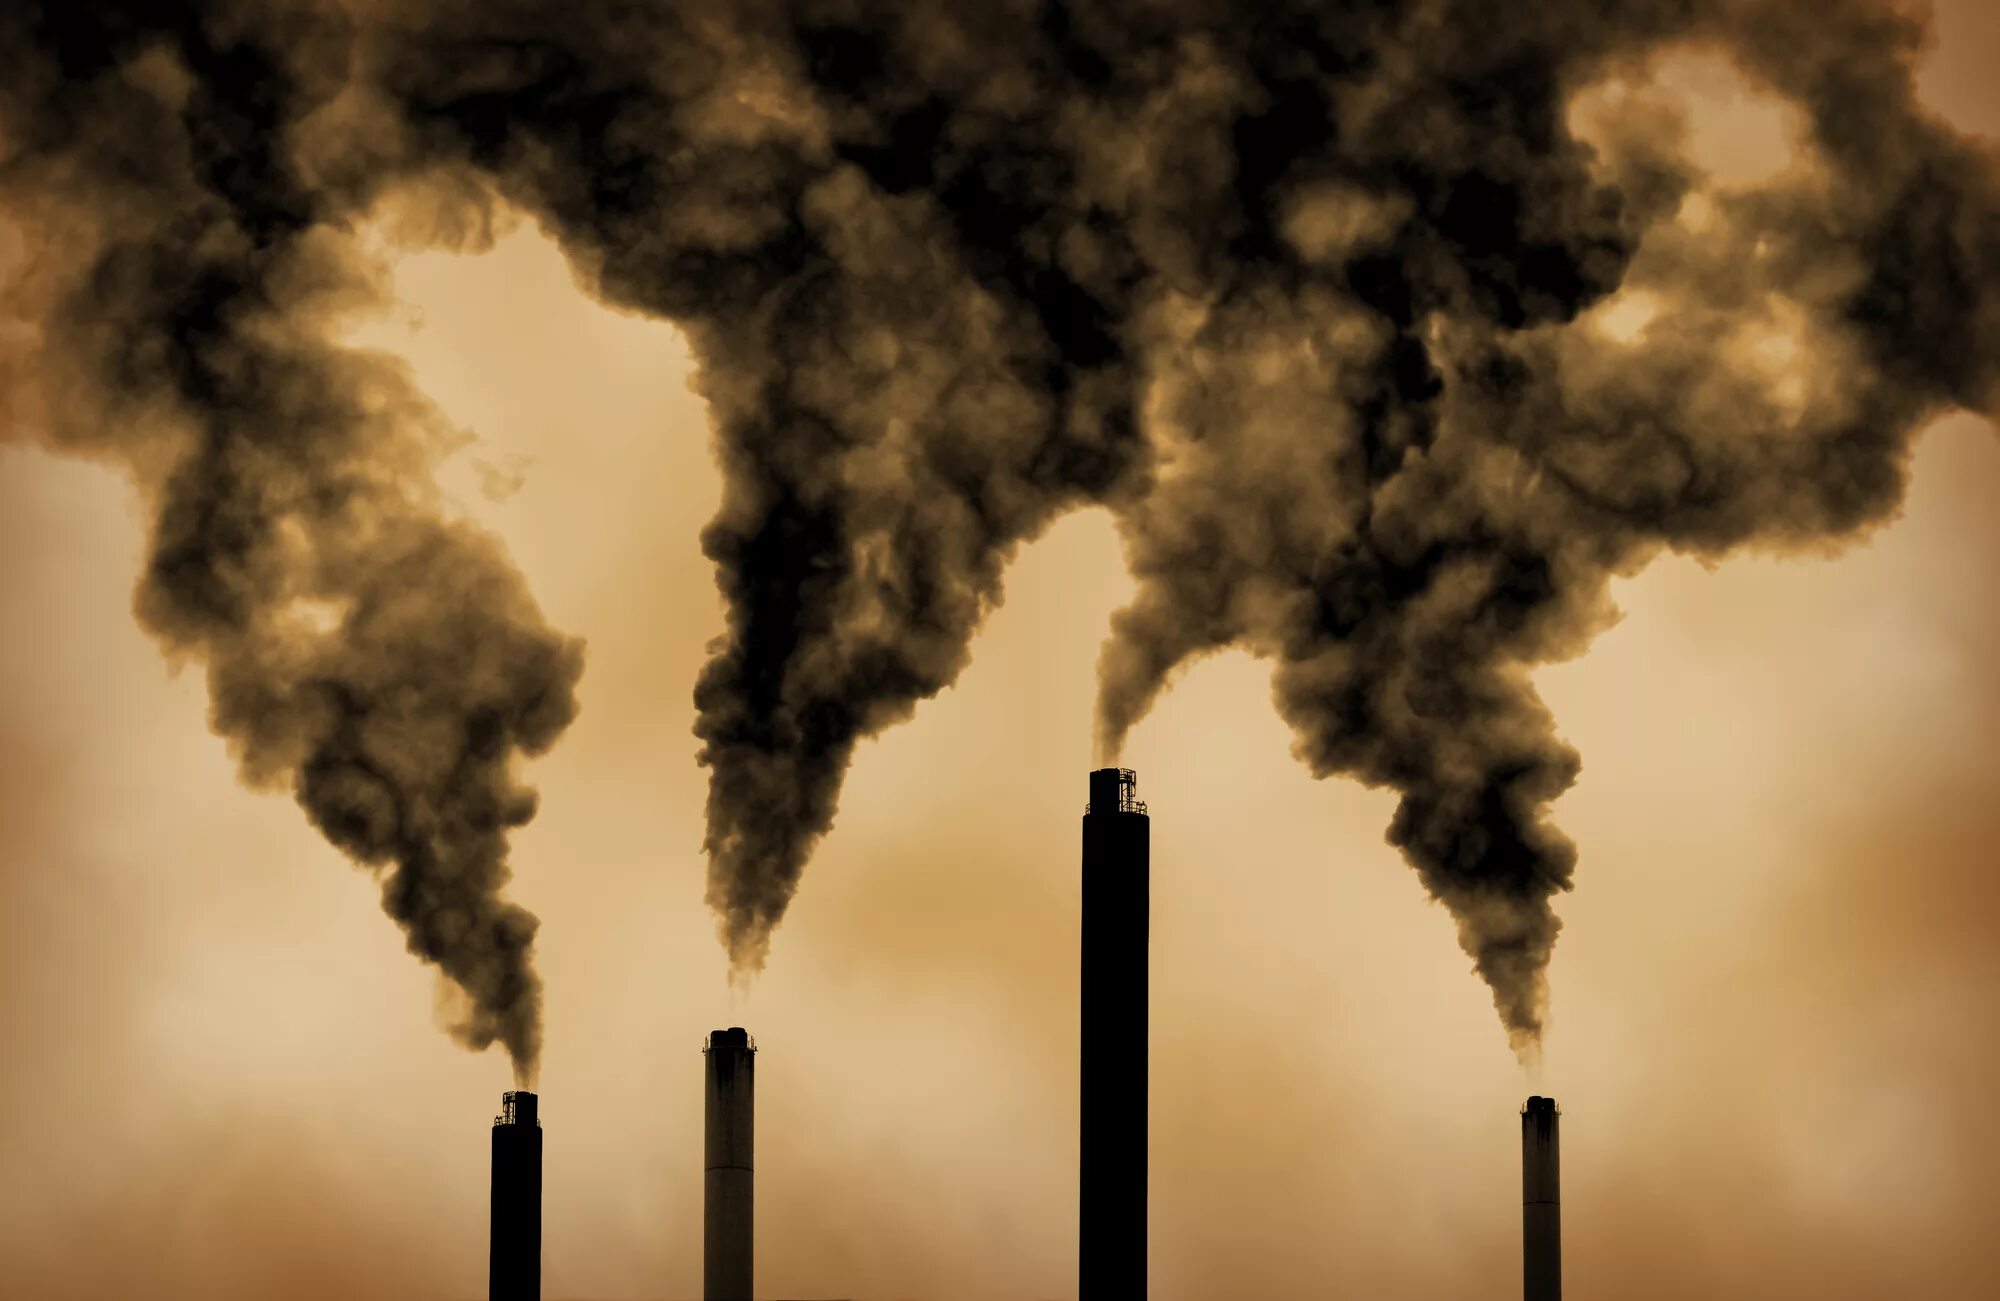 Выброс токсичных веществ. Выбросы в атмосферу. Загрязнение воздуха. Трубы завода дымят. Экология загрязнение воздуха.